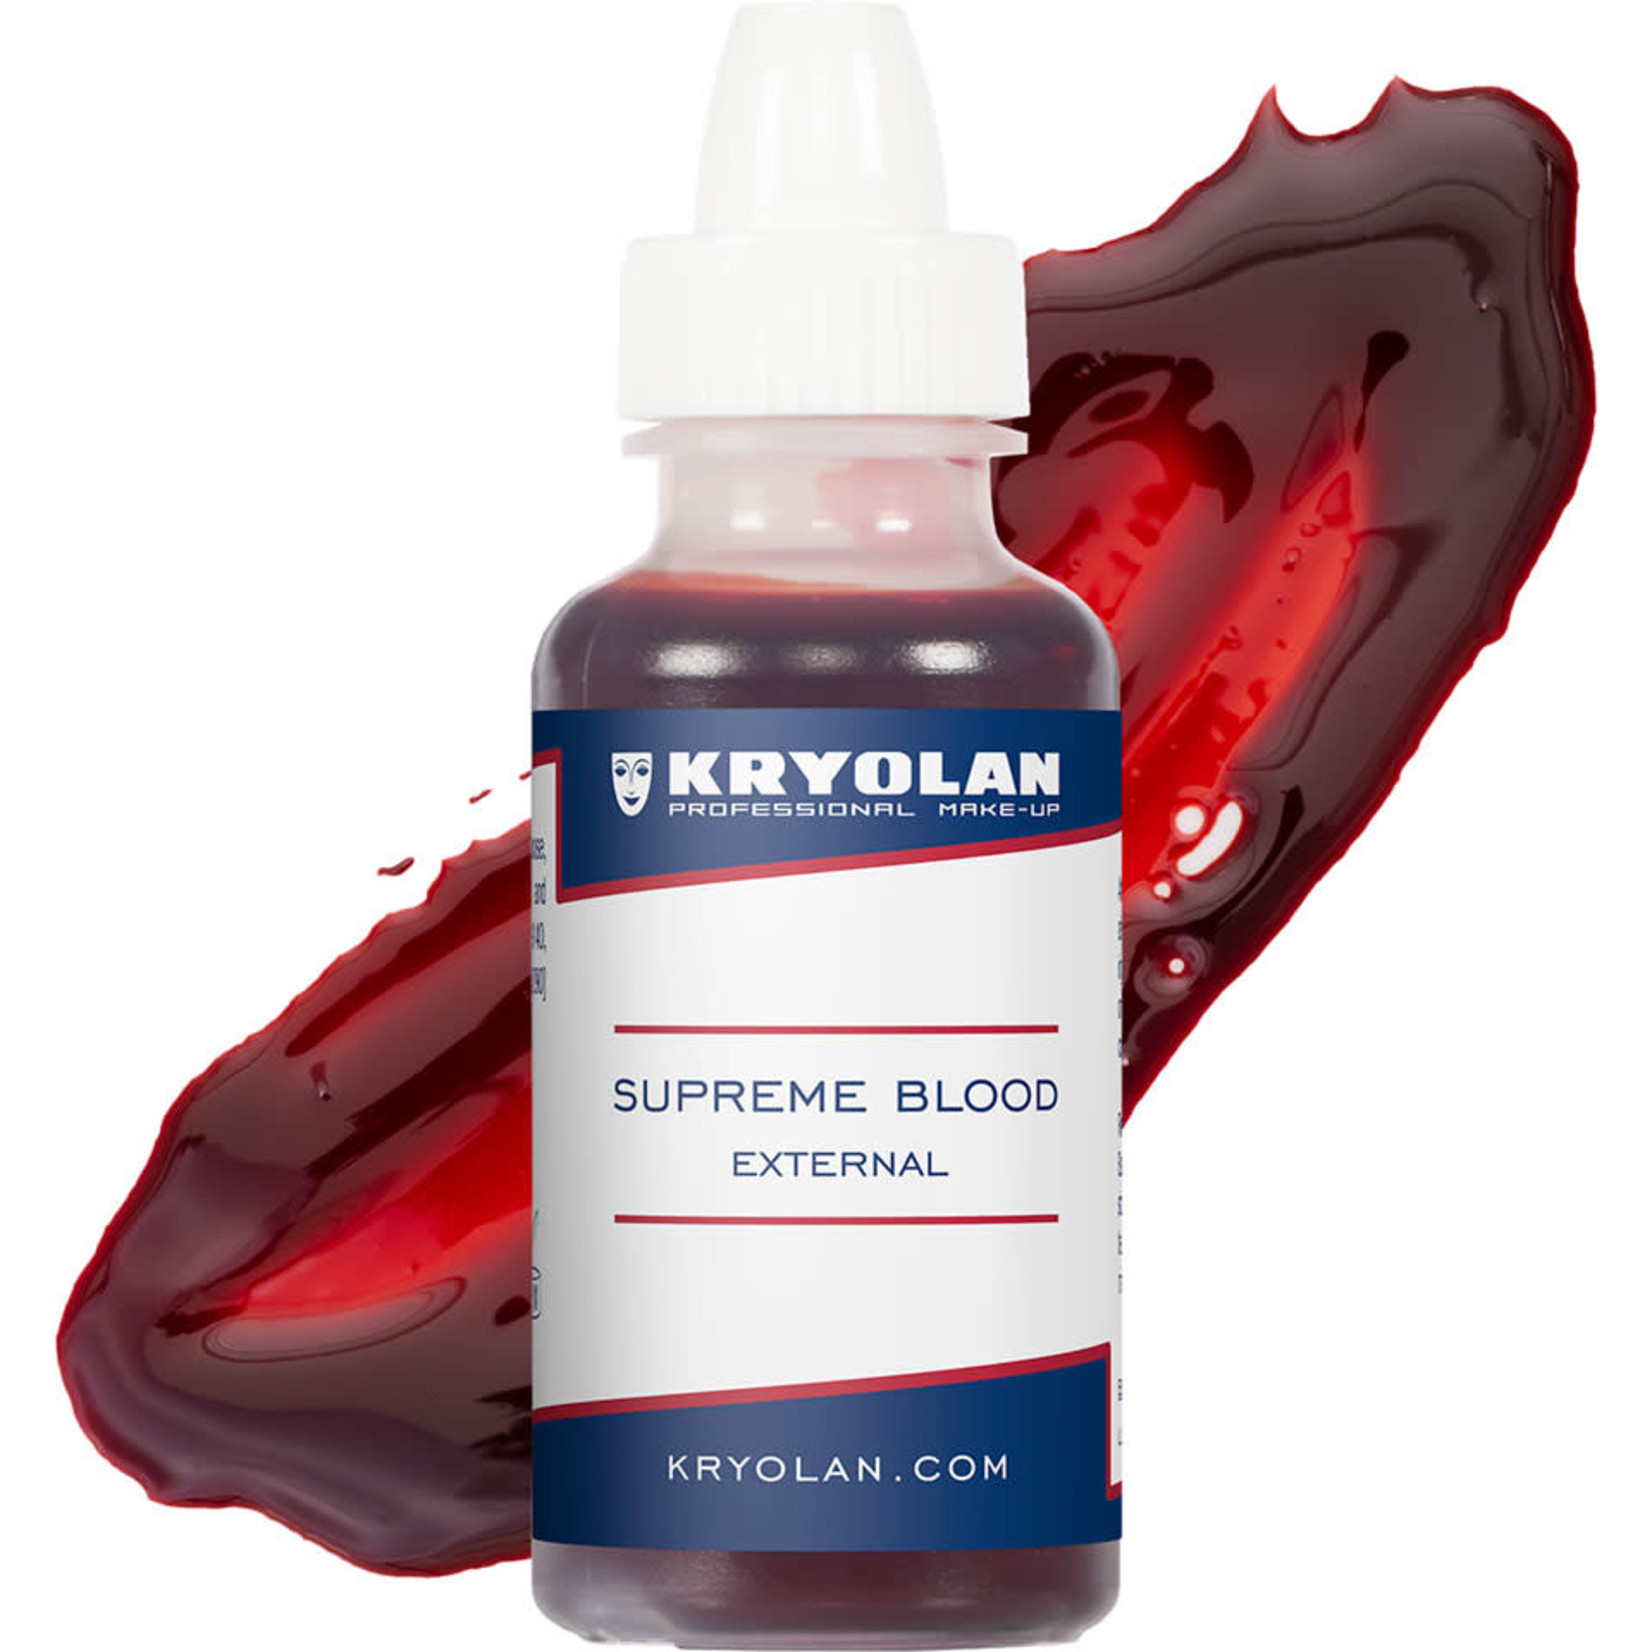 Kryolan Supreme Blood External